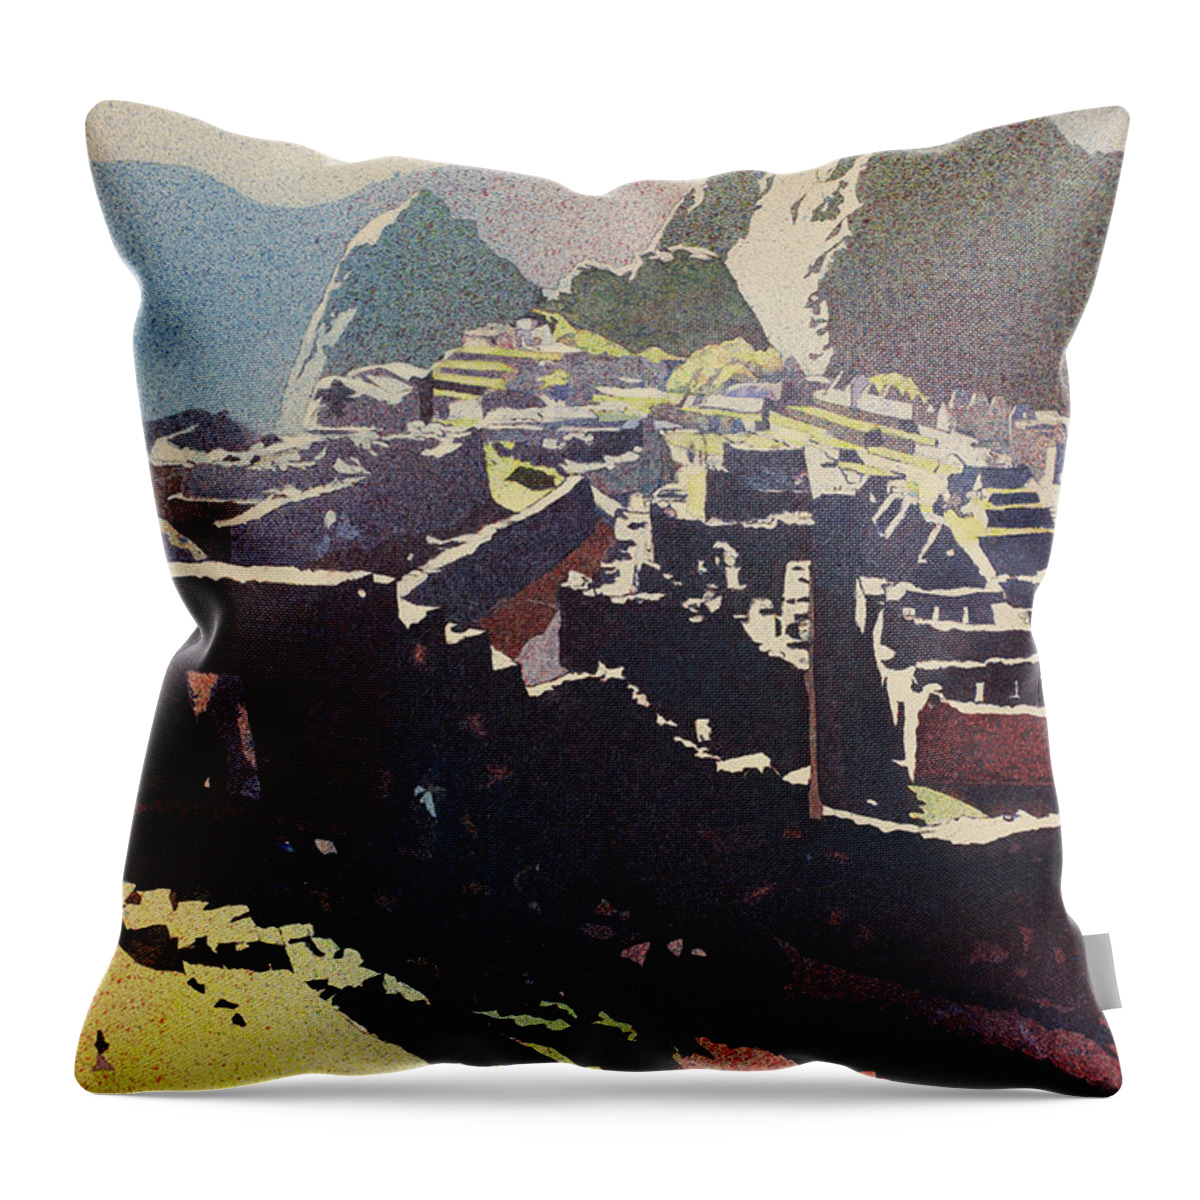 Machu Picchu Throw Pillow featuring the painting Machu Picchu Morning by Ryan Fox